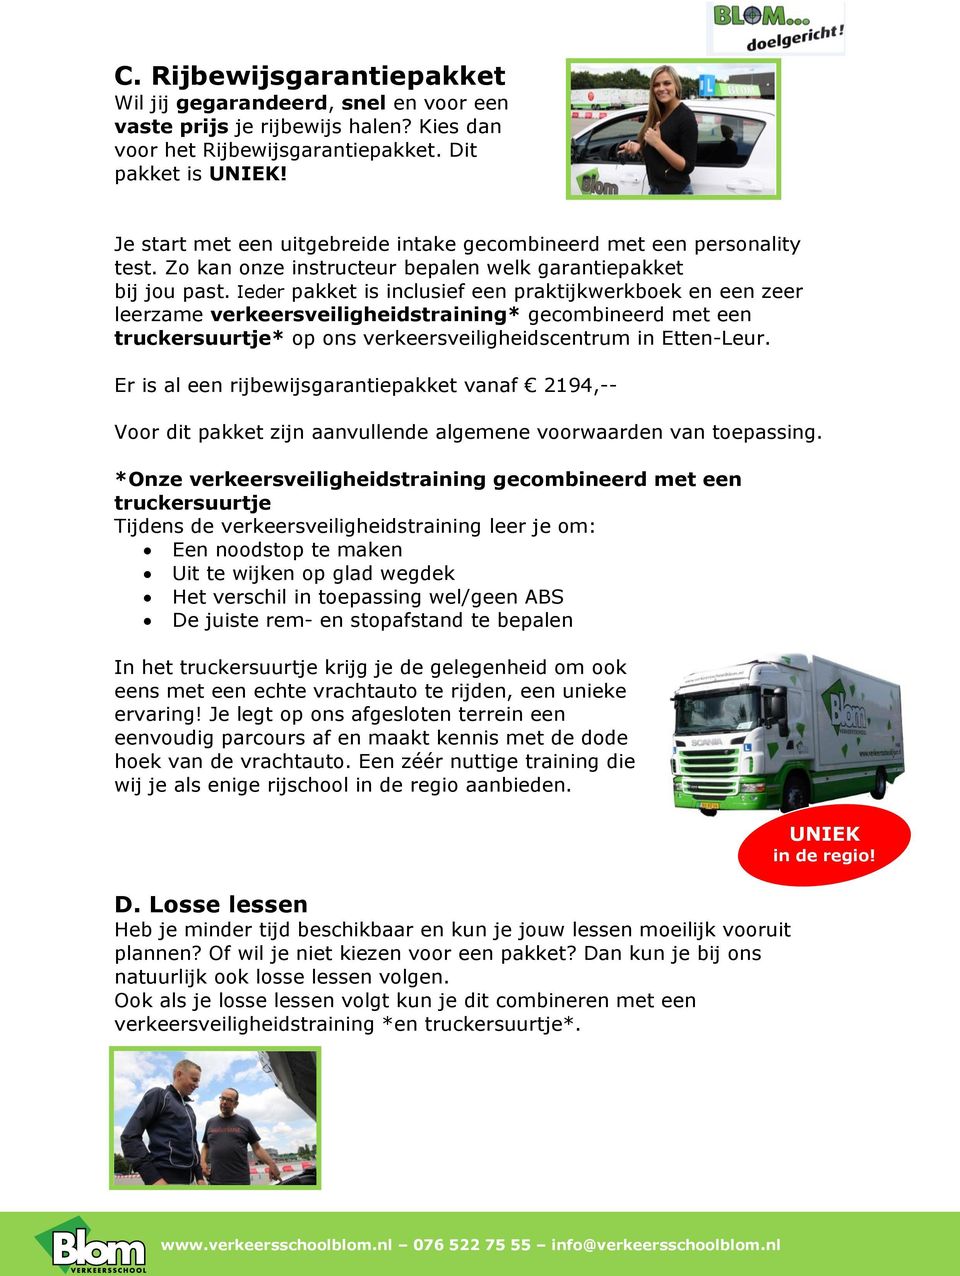 Ieder pakket is inclusief een praktijkwerkboek en een zeer leerzame verkeersveiligheidstraining* gecombineerd met een truckersuurtje* op ons verkeersveiligheidscentrum in Etten-Leur.